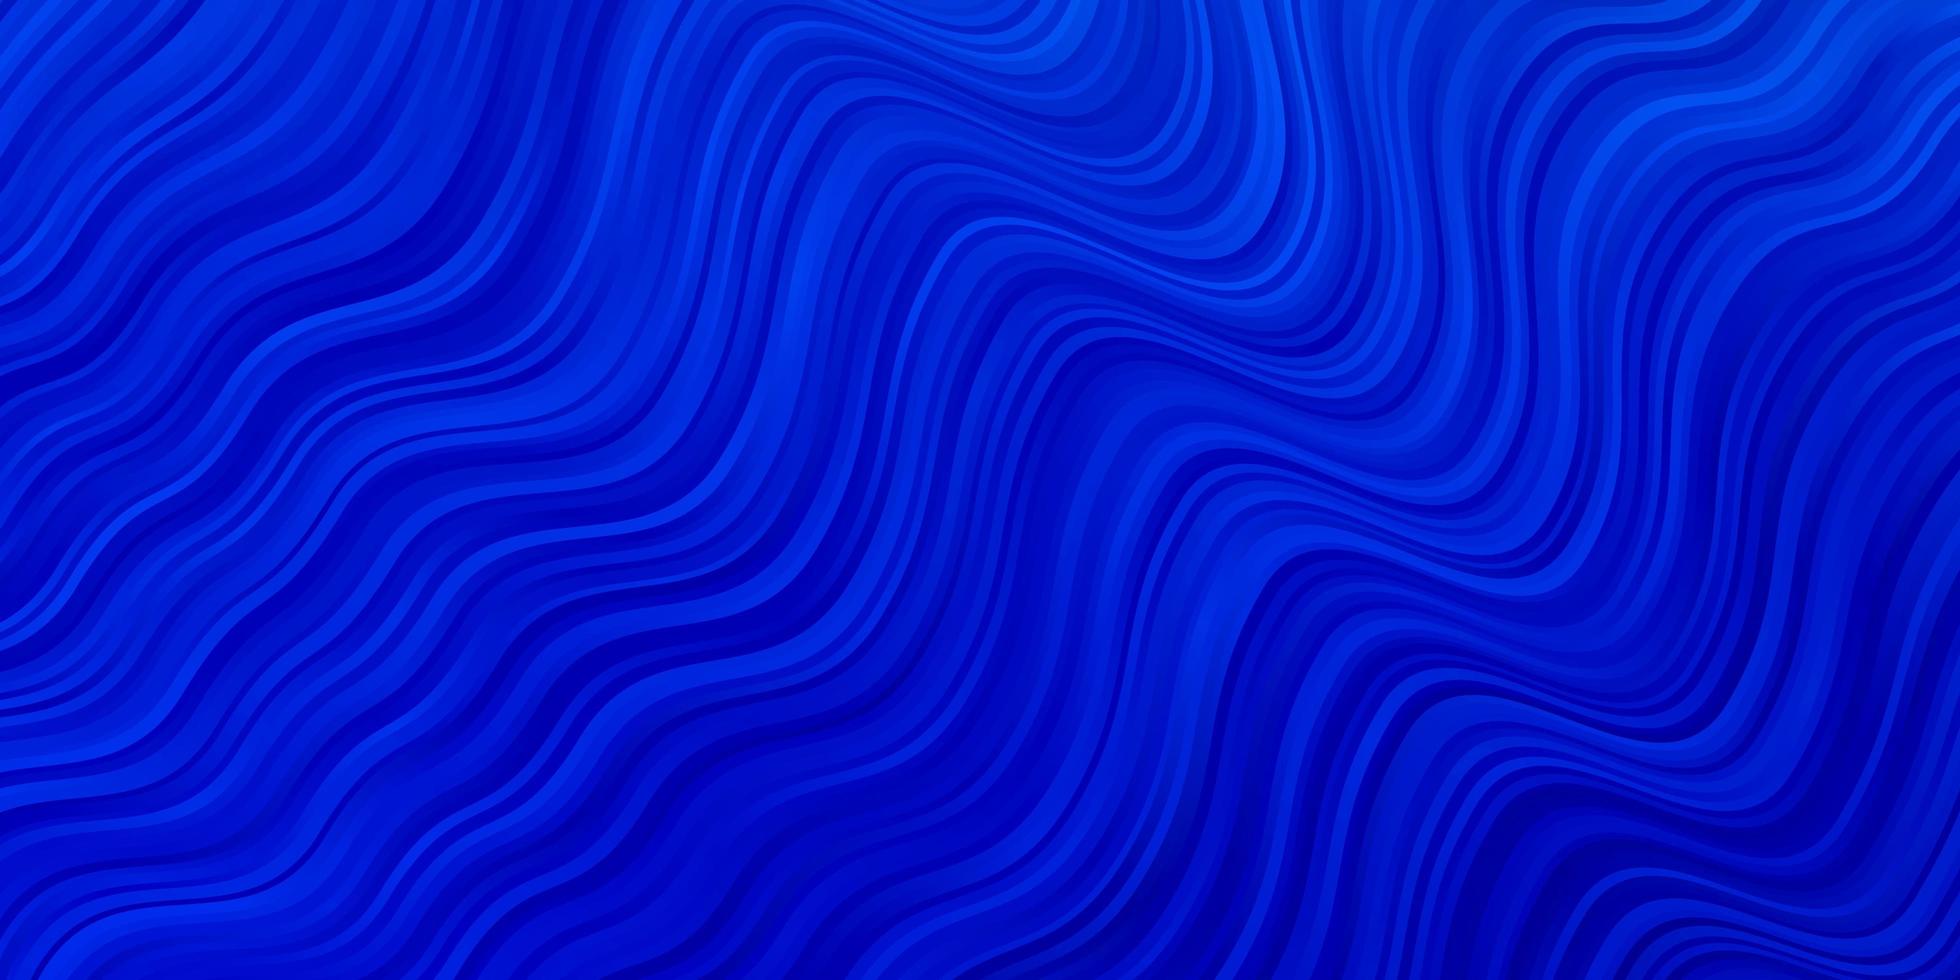 plantilla de vector azul claro con curvas.